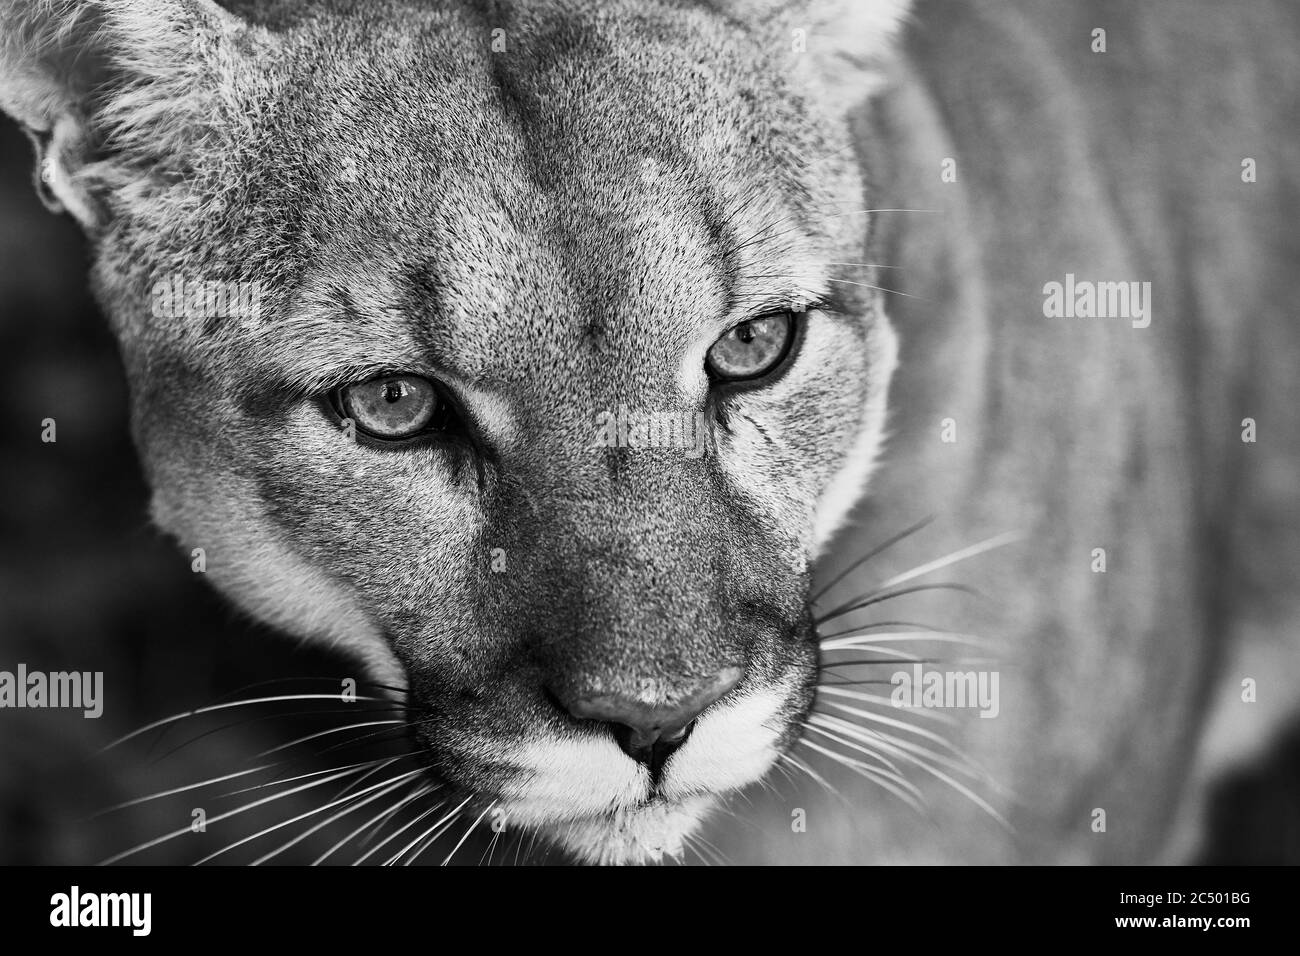 Portrait de la belle Puma. Cougar, lion de montagne, puma, panthère, pose  frappante, scène dans les bois, faune Amérique Photo Stock - Alamy